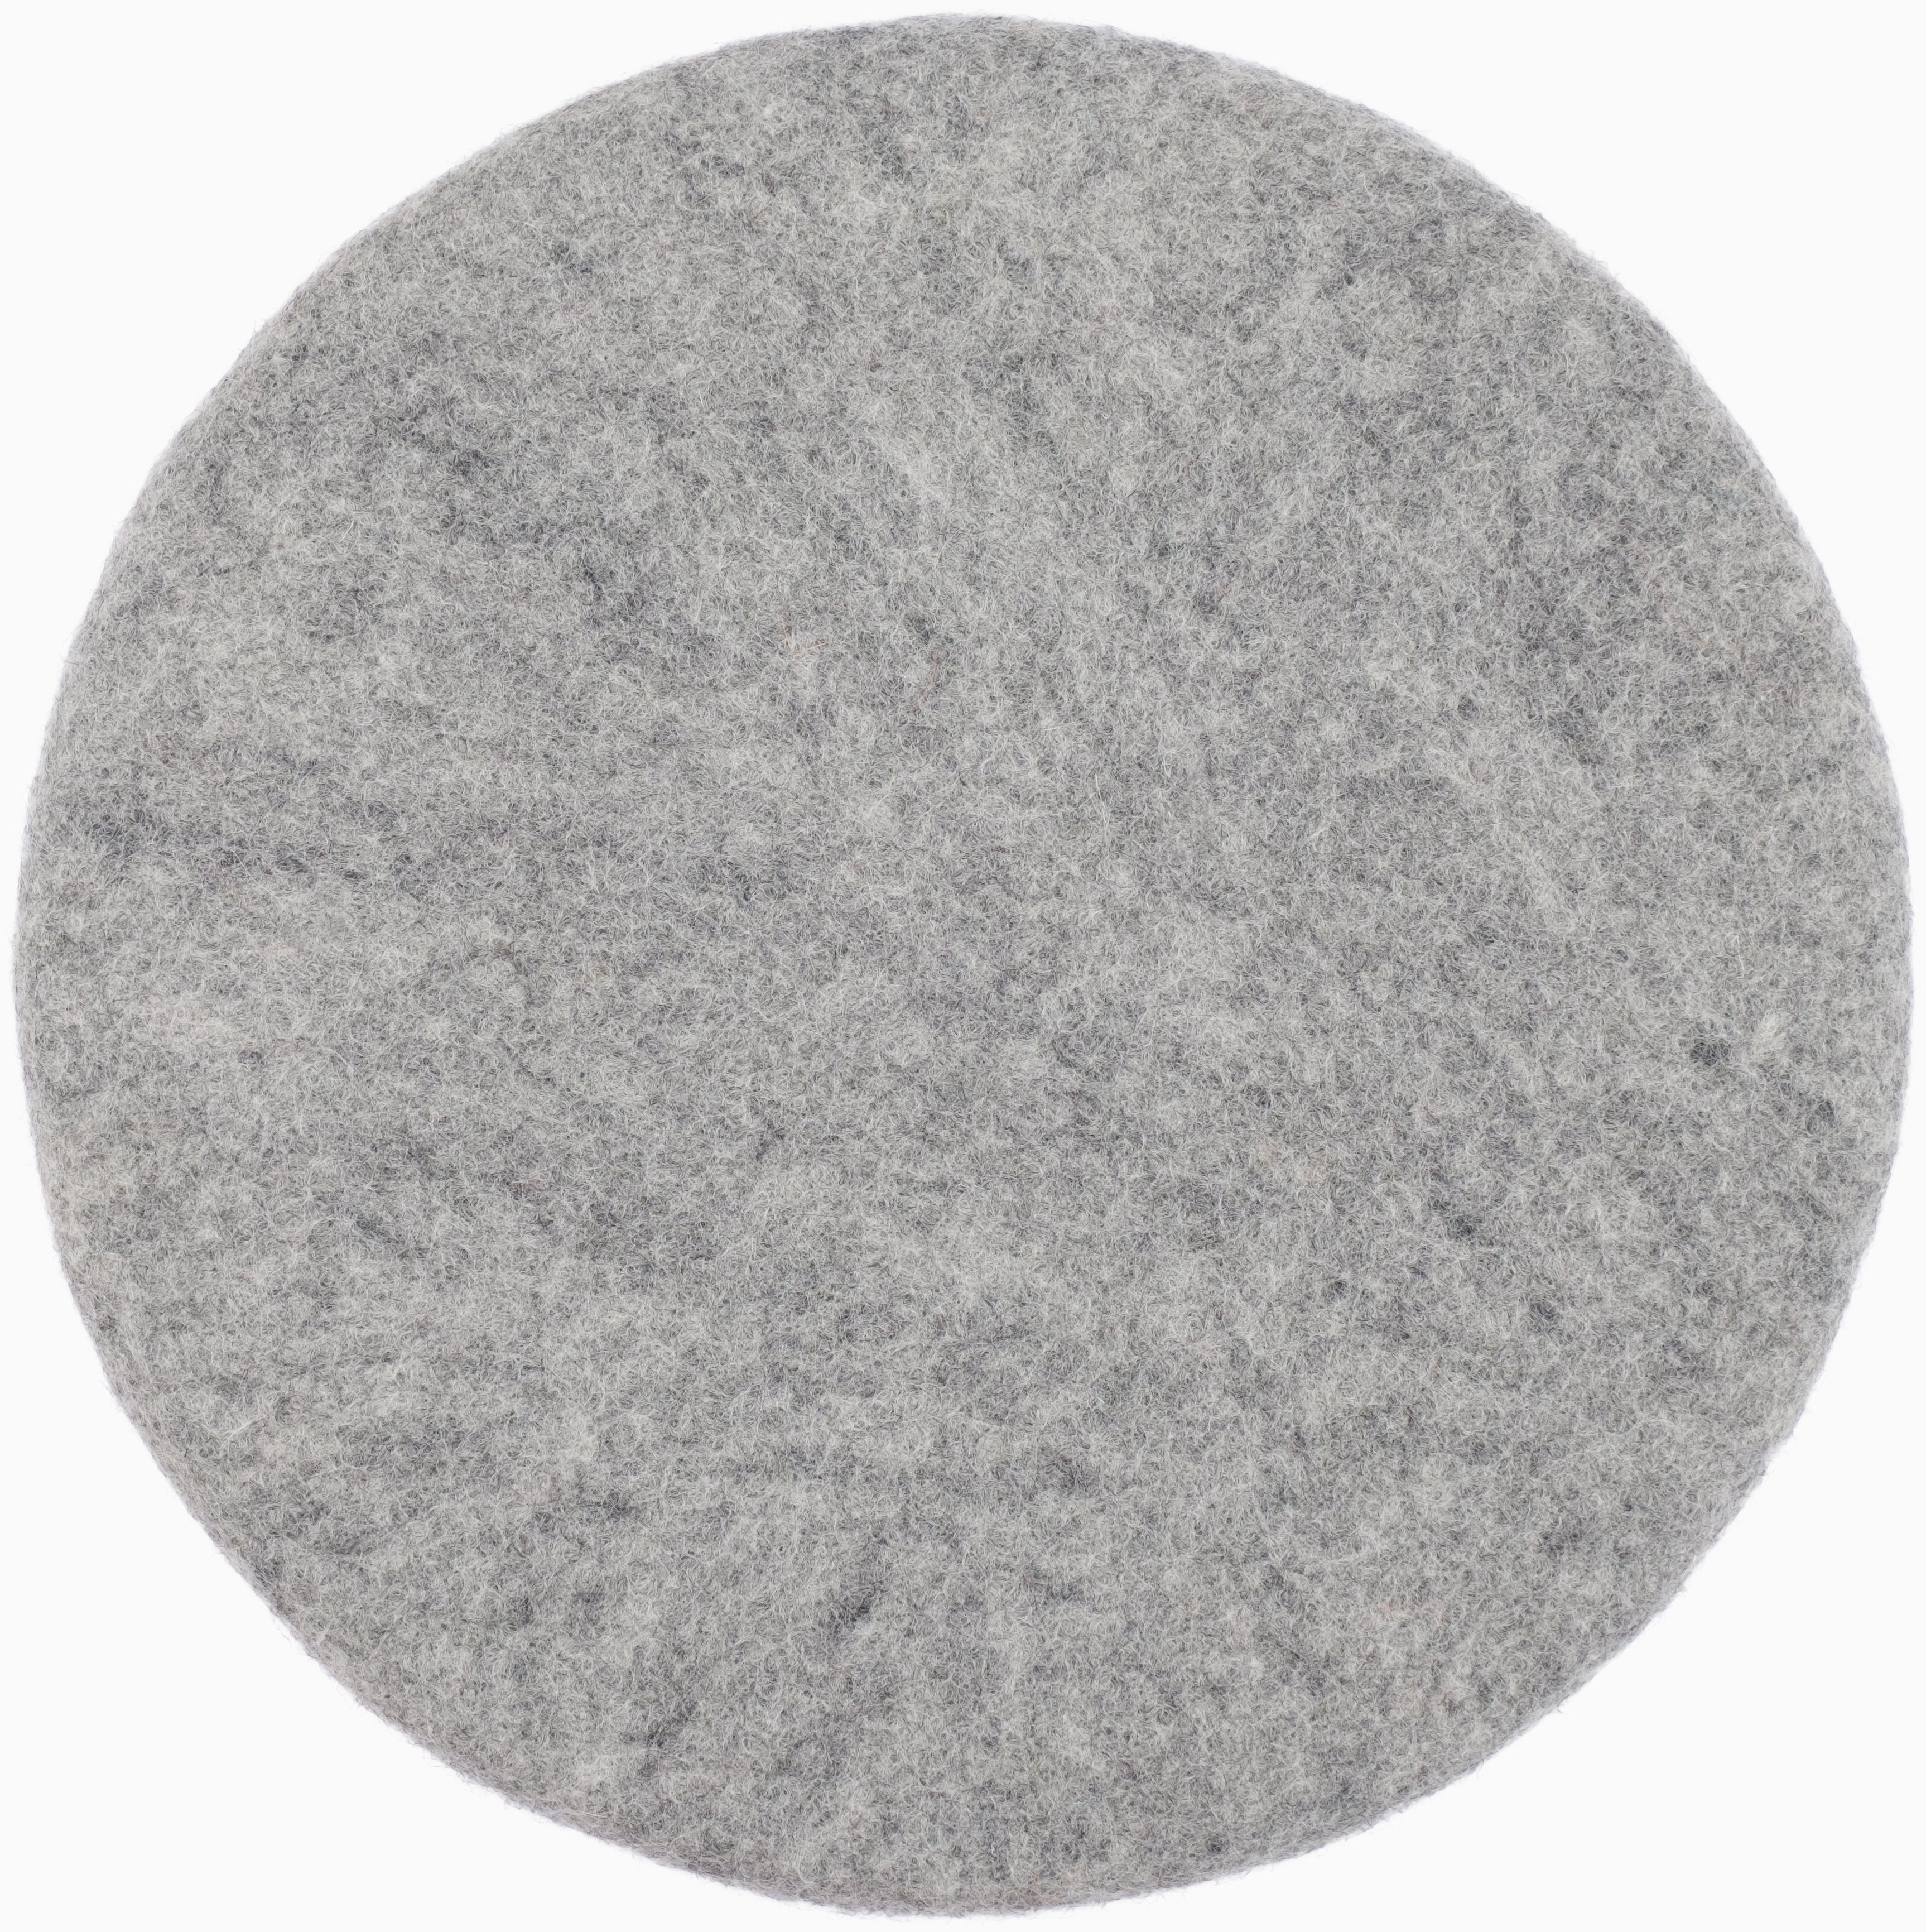 myfelt Stuhlkissen Filz Sitzauflage ⌀ 36 cm, 100% reiner Schurwolle, rund, schmutzabweisend